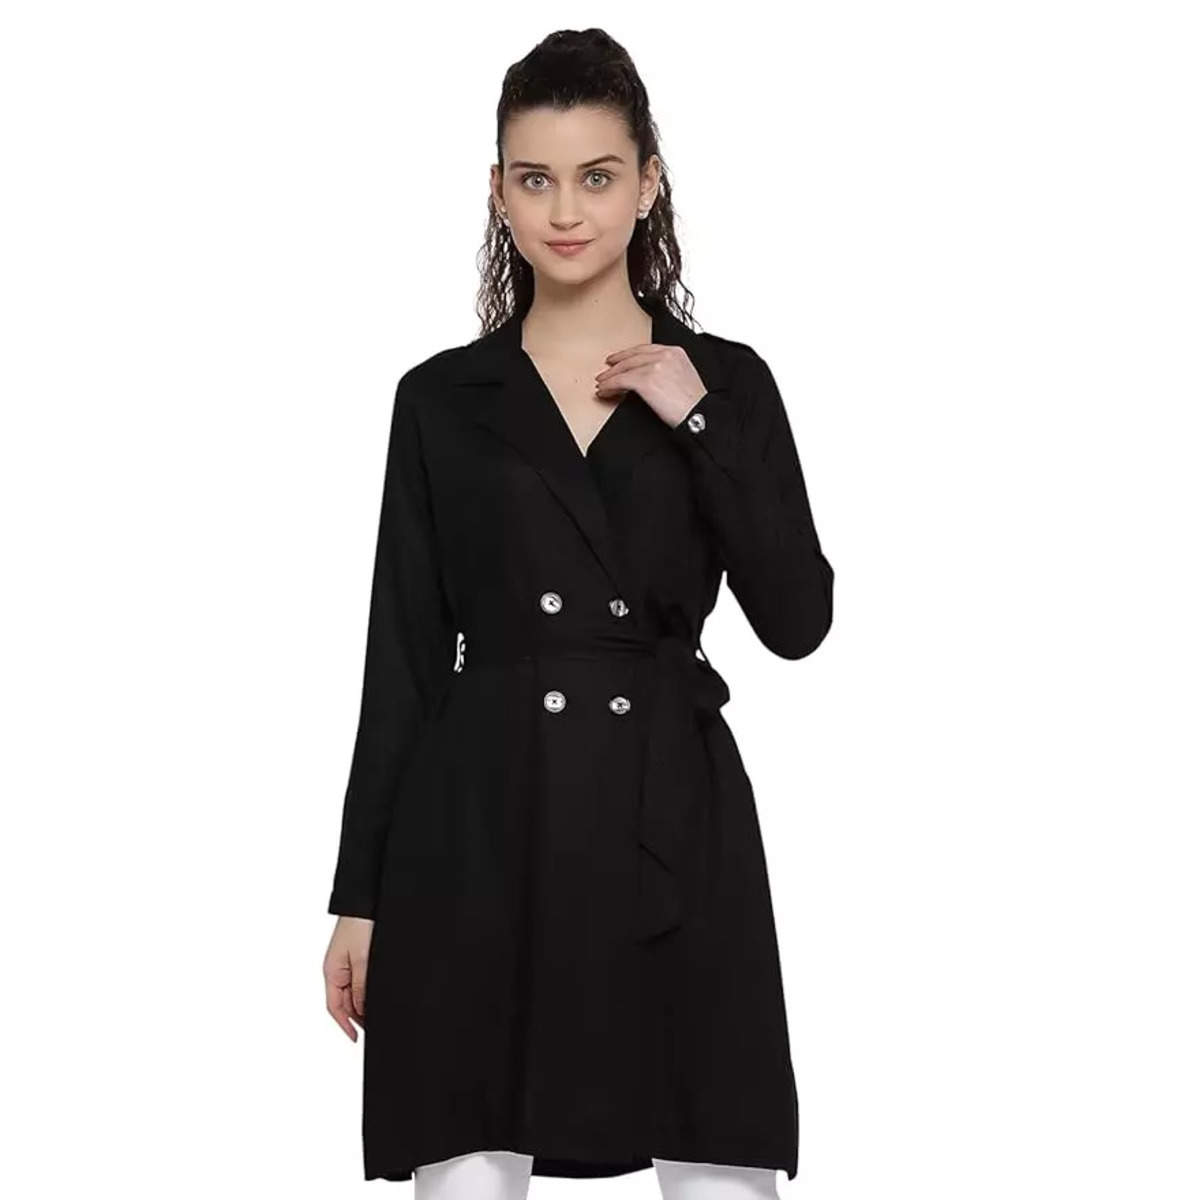 black winter coat for women under 1000: Black winter coat for